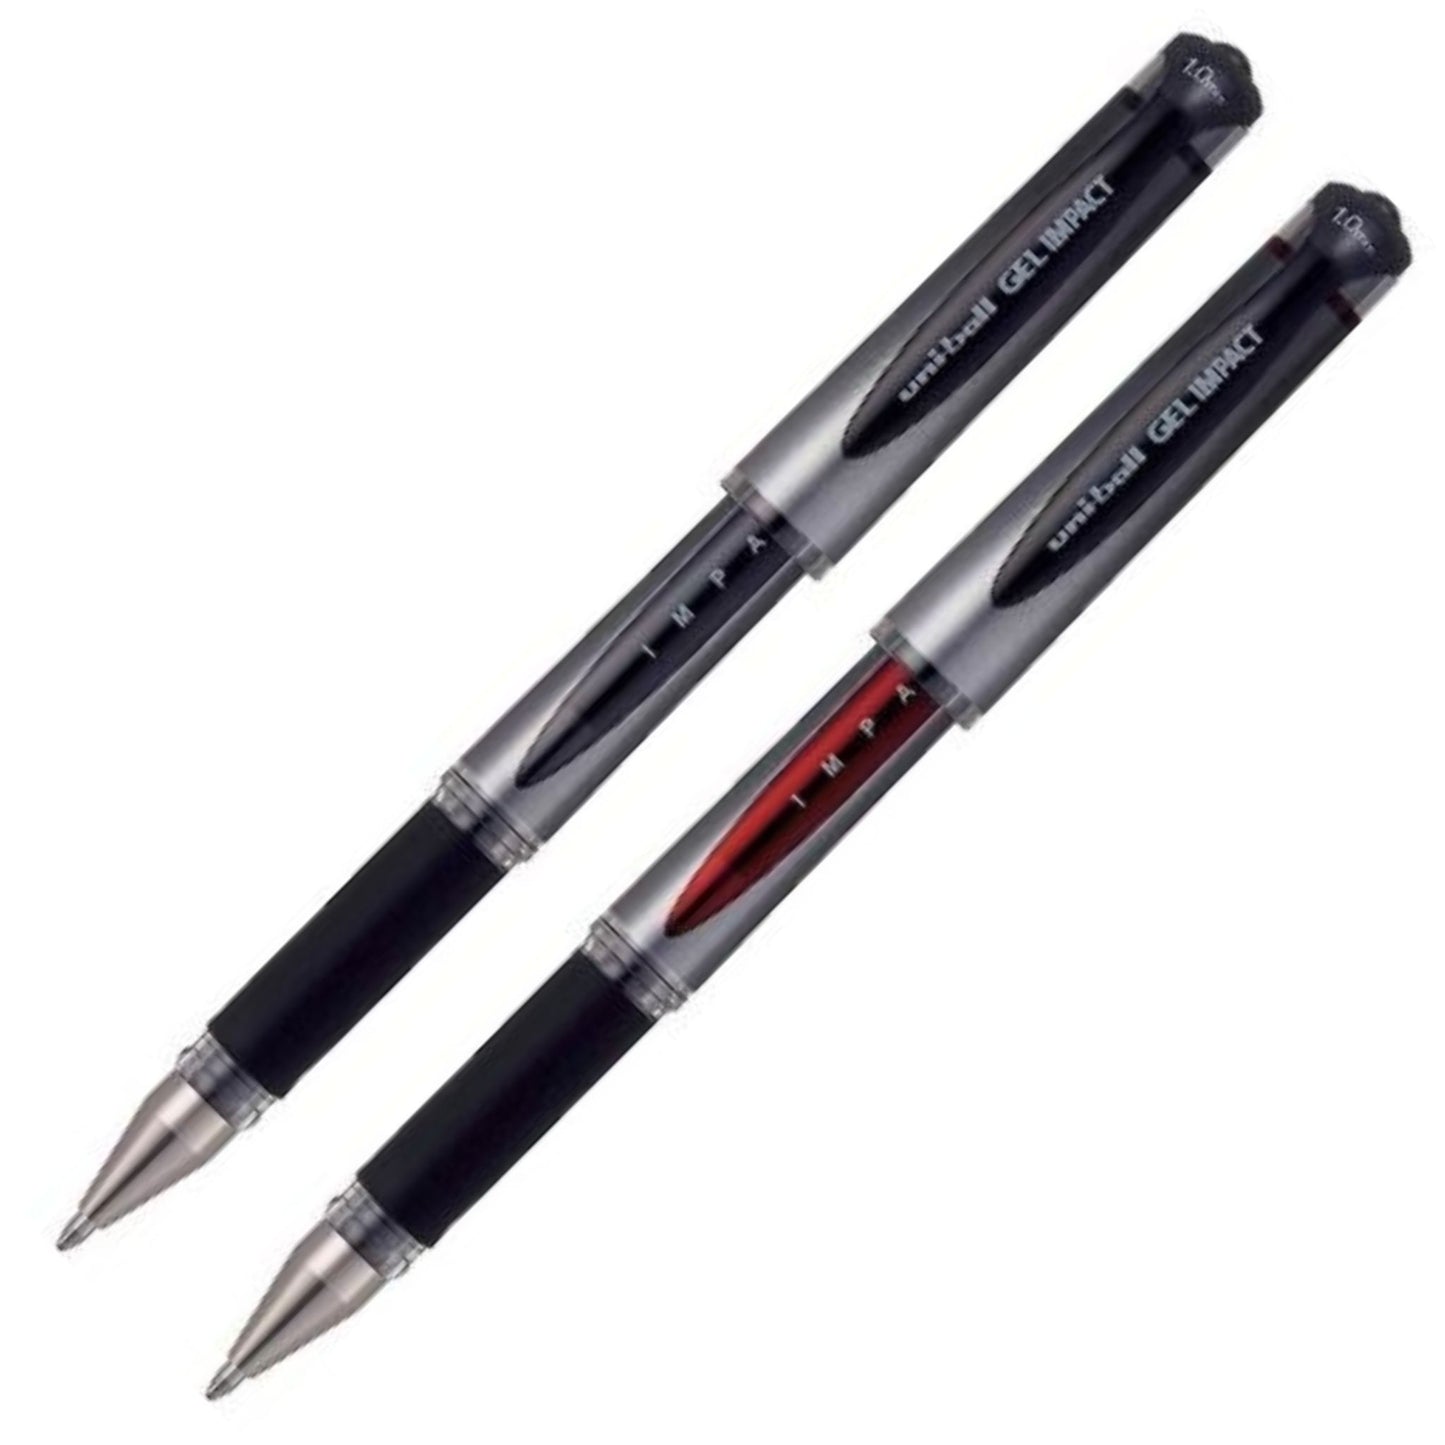 Geleroller med vannfast, blekefast og hurtigtørkende blekk. Det ultraglatte gelblekket og det solide gummigrepet gjør denne pennen til en fryd å skrive med. Fås i fargene sort og rød.